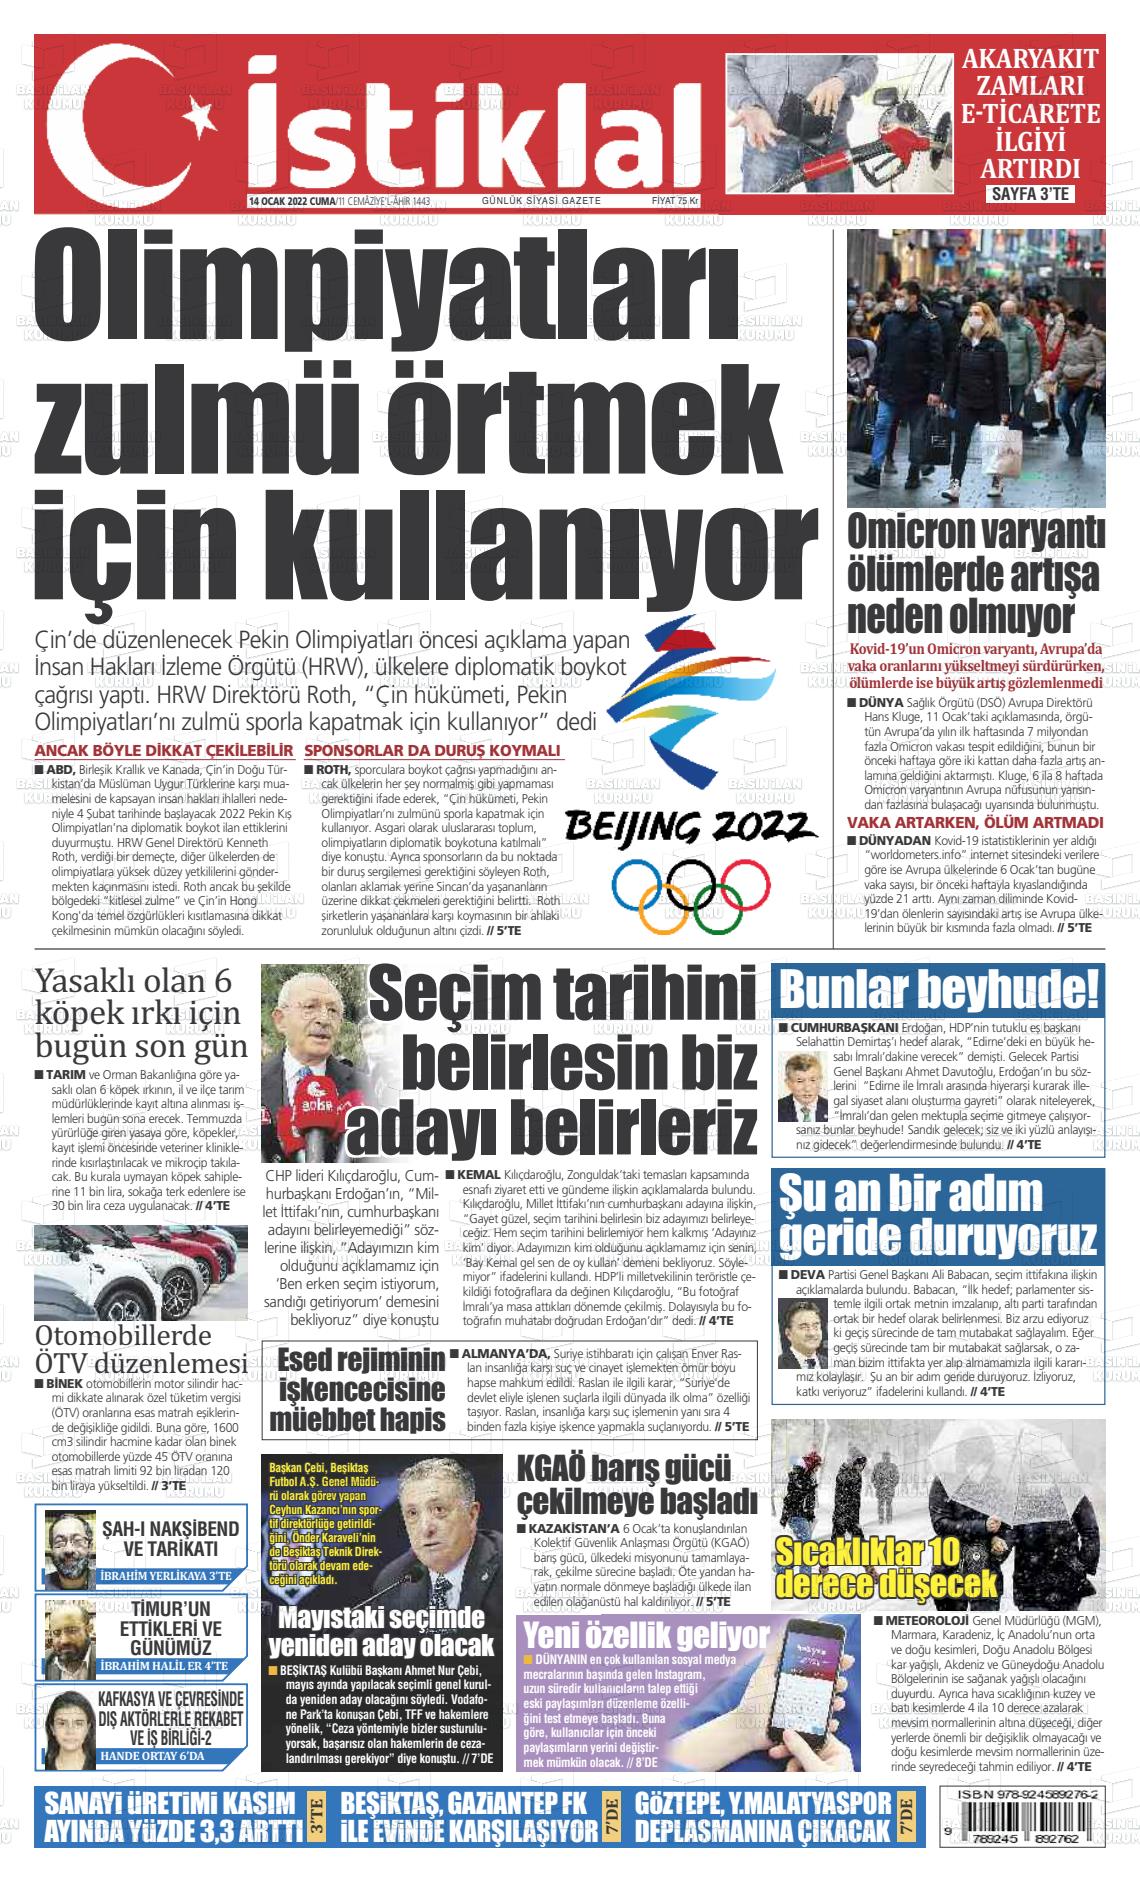 14 Ocak 2022 İstiklal  Fatih Gazete Manşeti